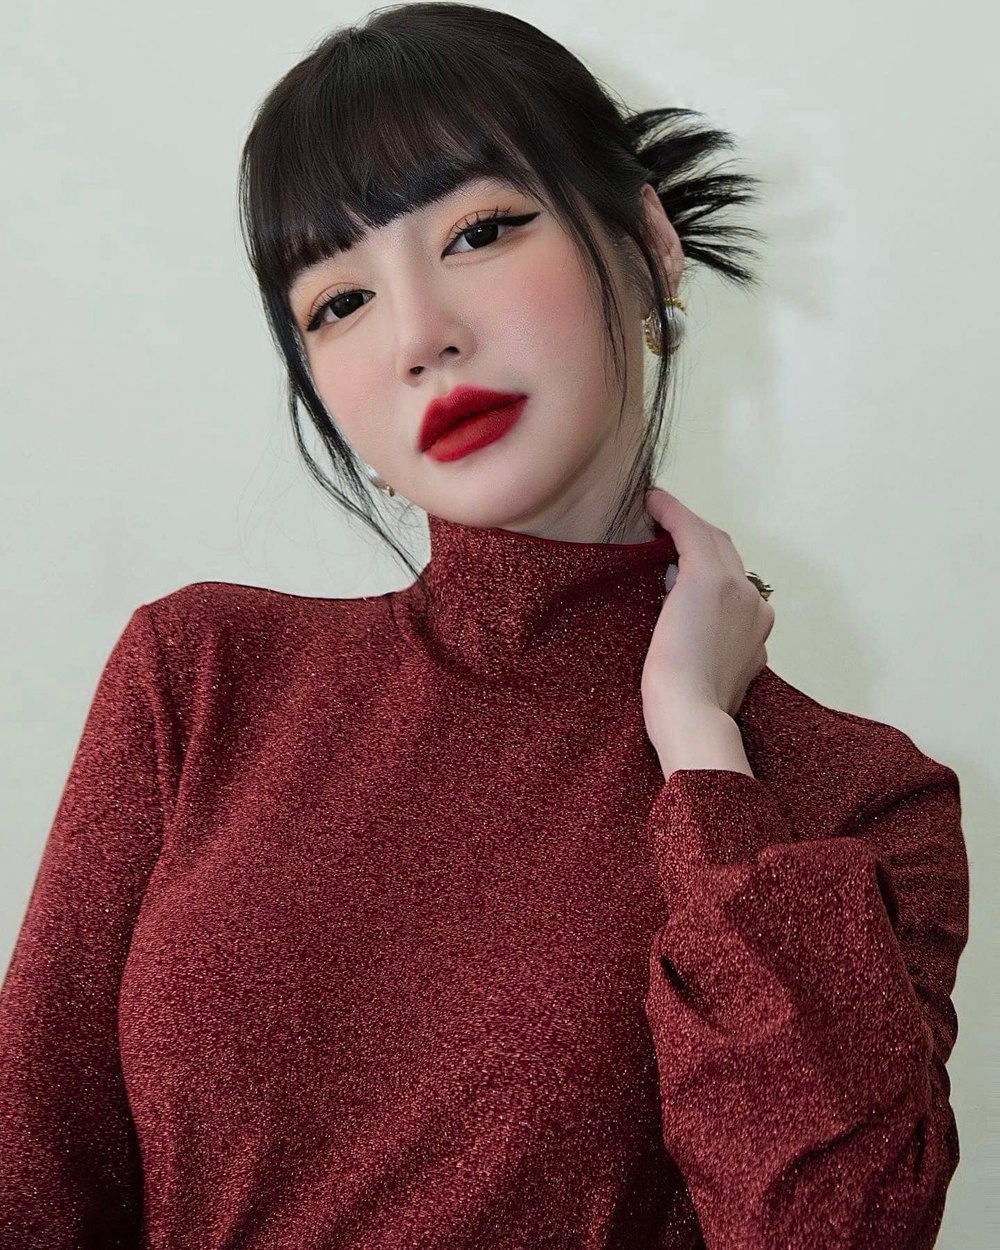  
Elly Trần được nhận xét là có đôi môi quyến rũ nhất nhì showbiz Việt. (Ảnh: FB Elly Trần)